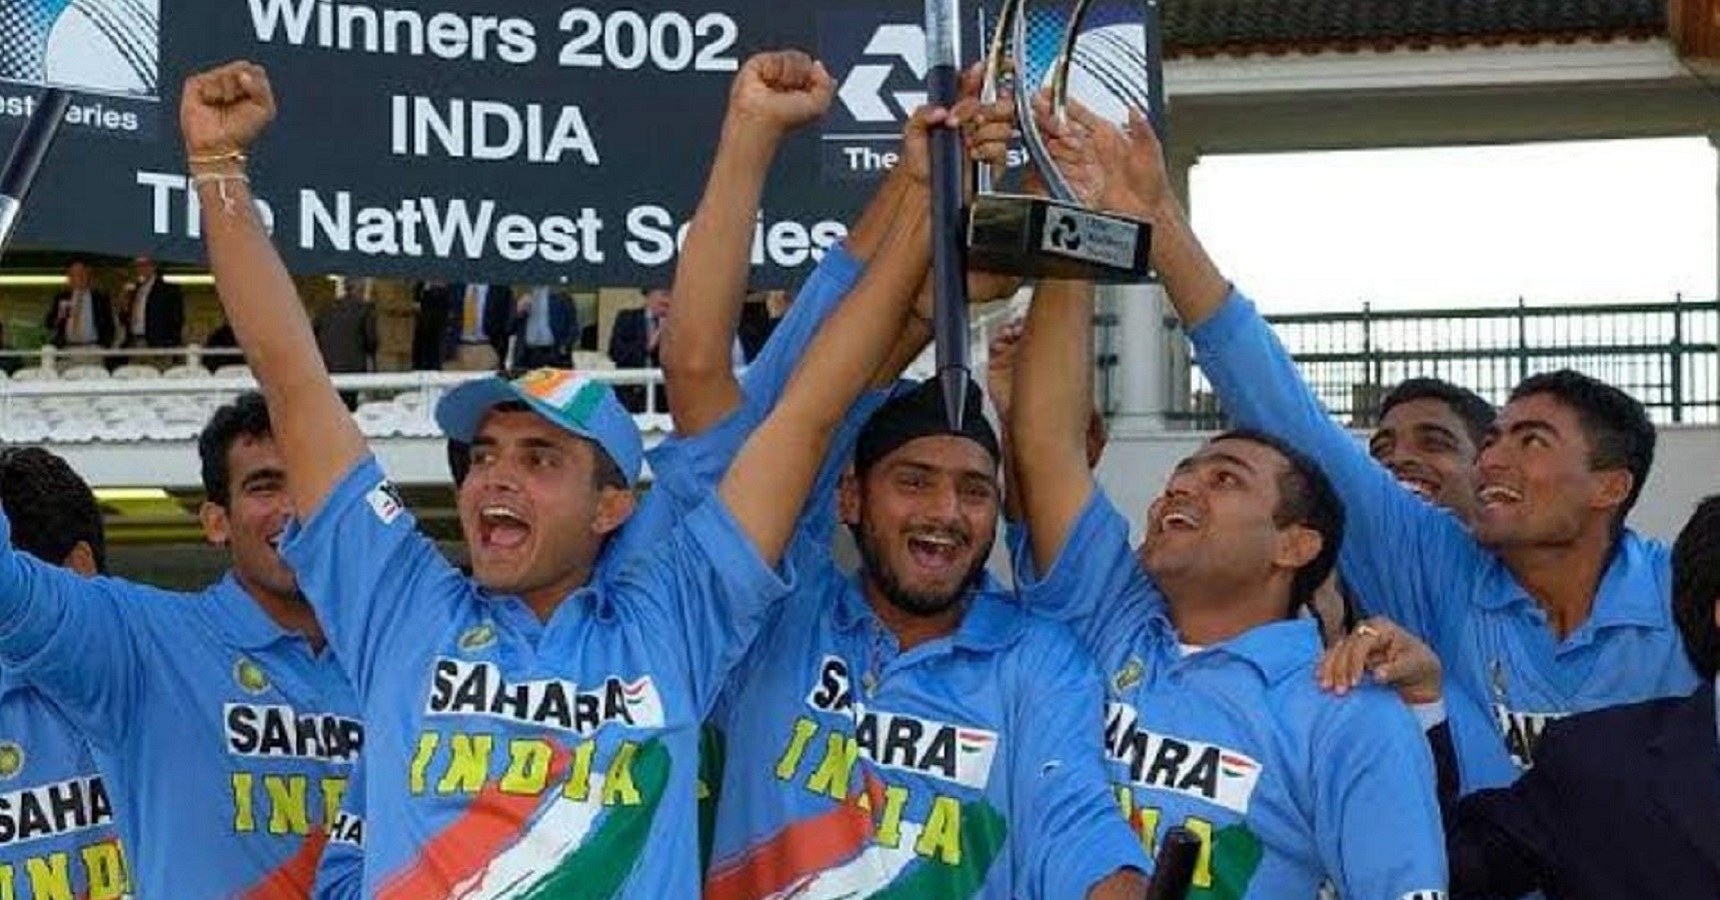 2002 team india